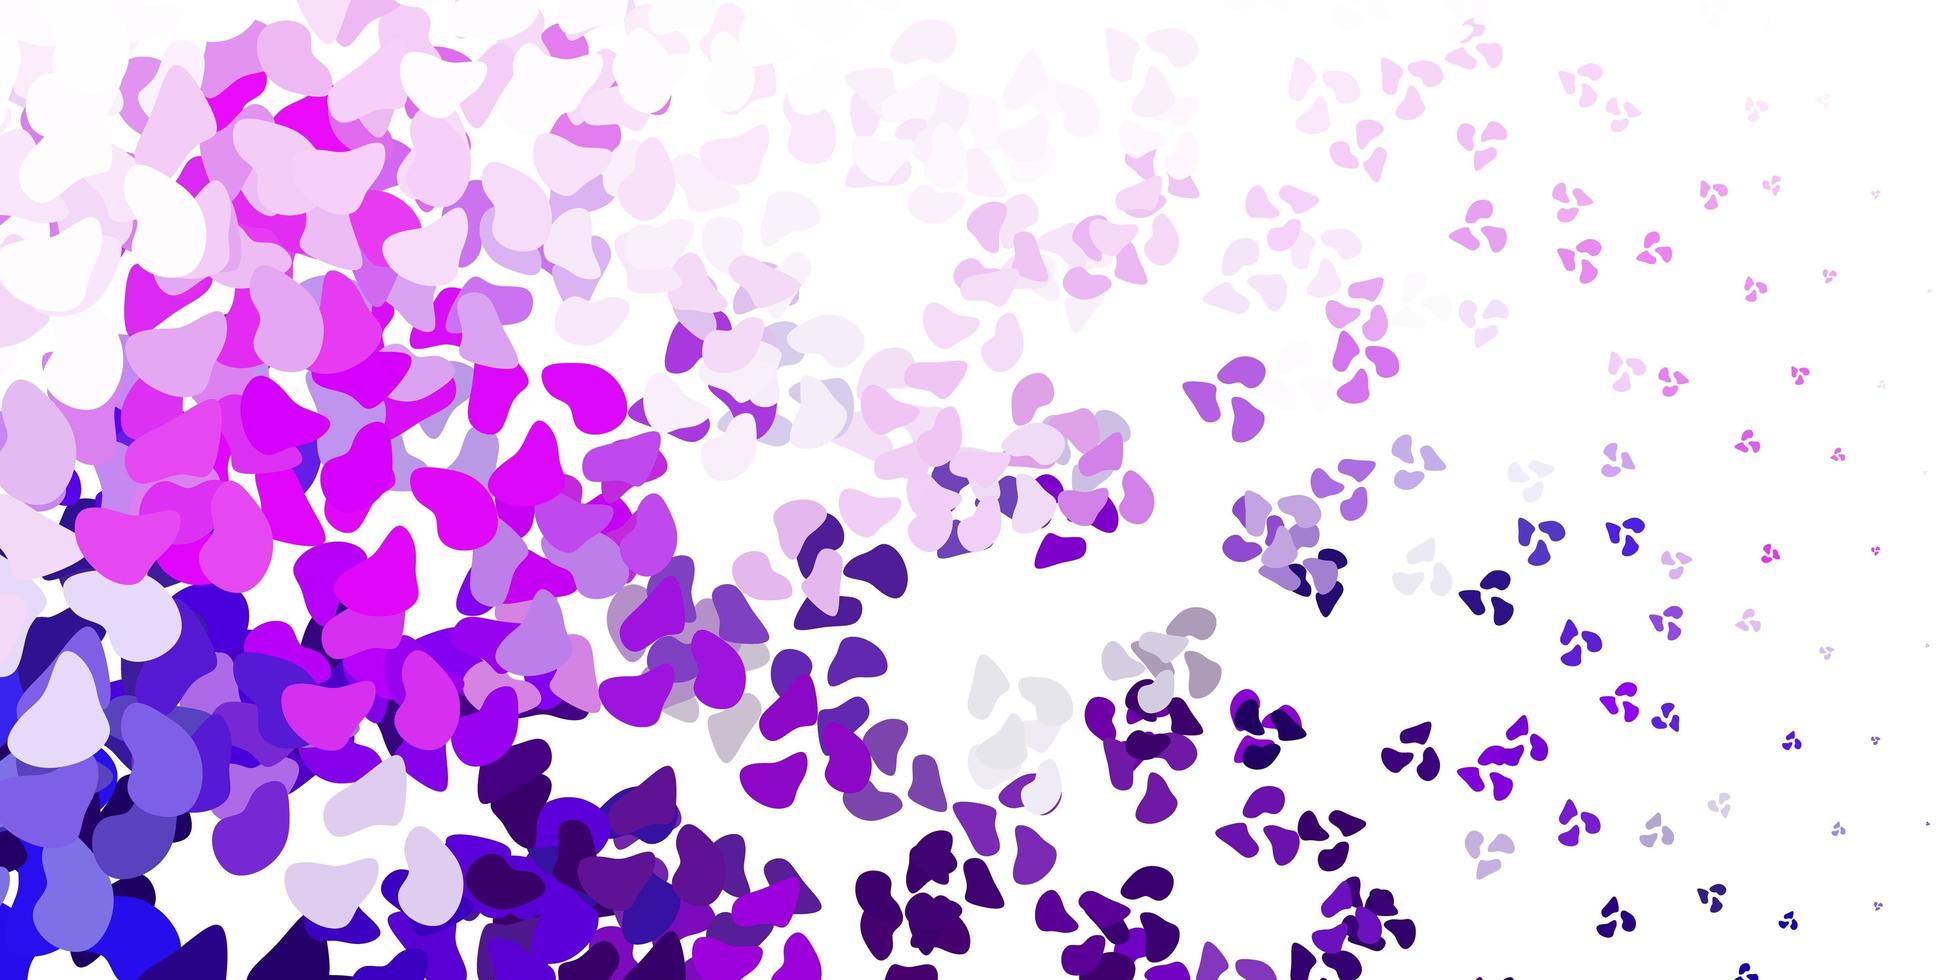 fond de vecteur violet clair avec des formes aléatoires